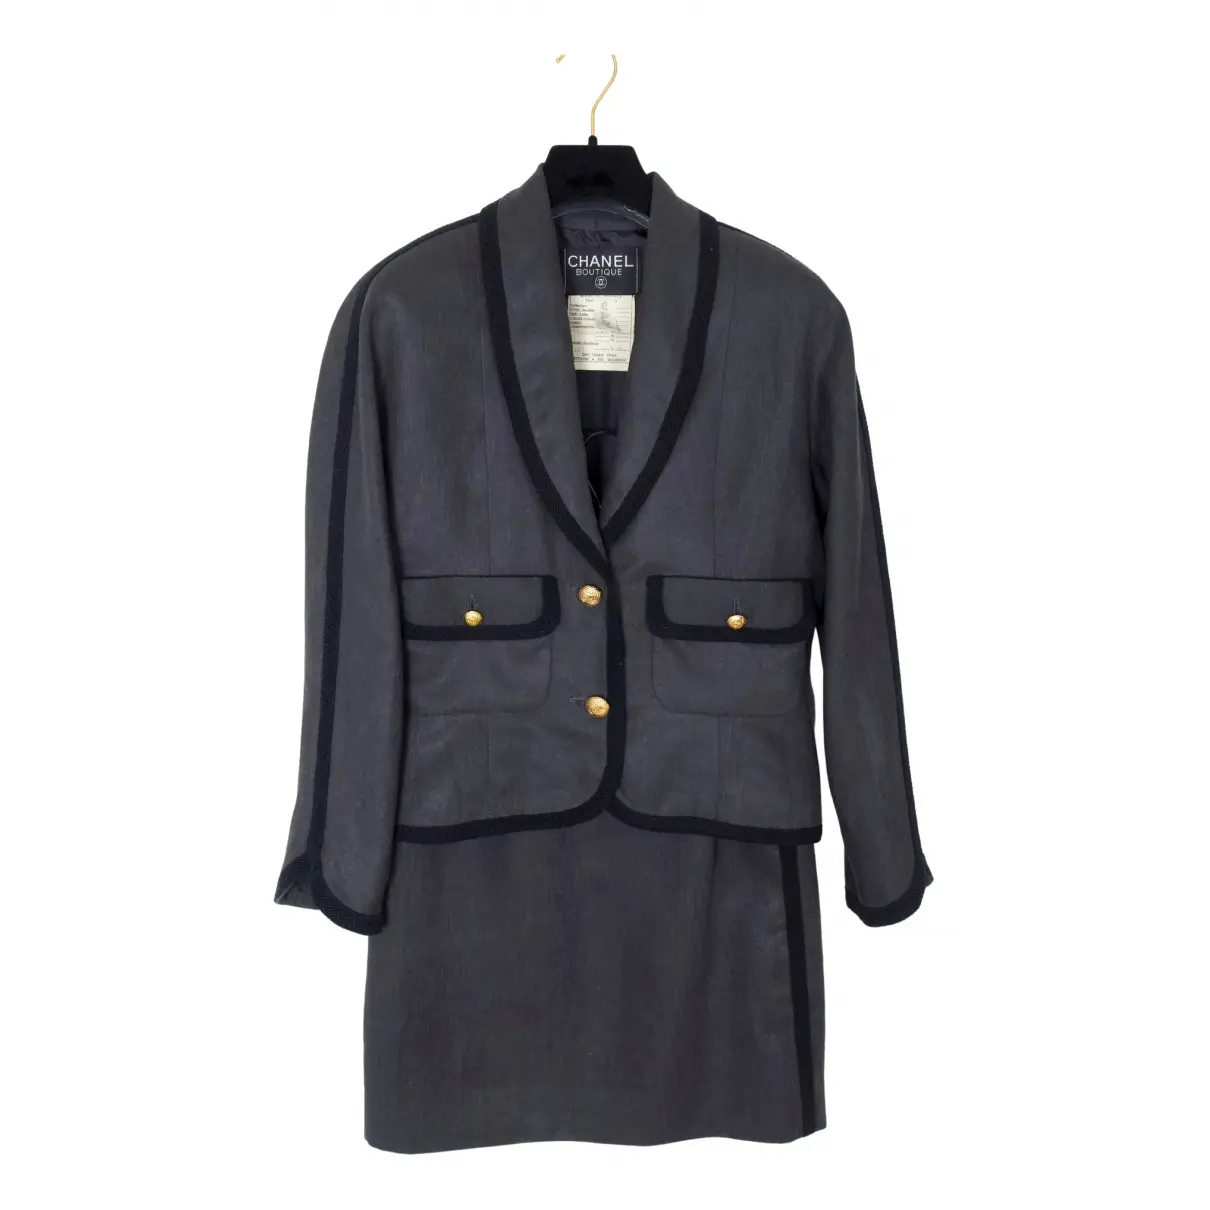 Linen suit jacket Chanel - Vintage